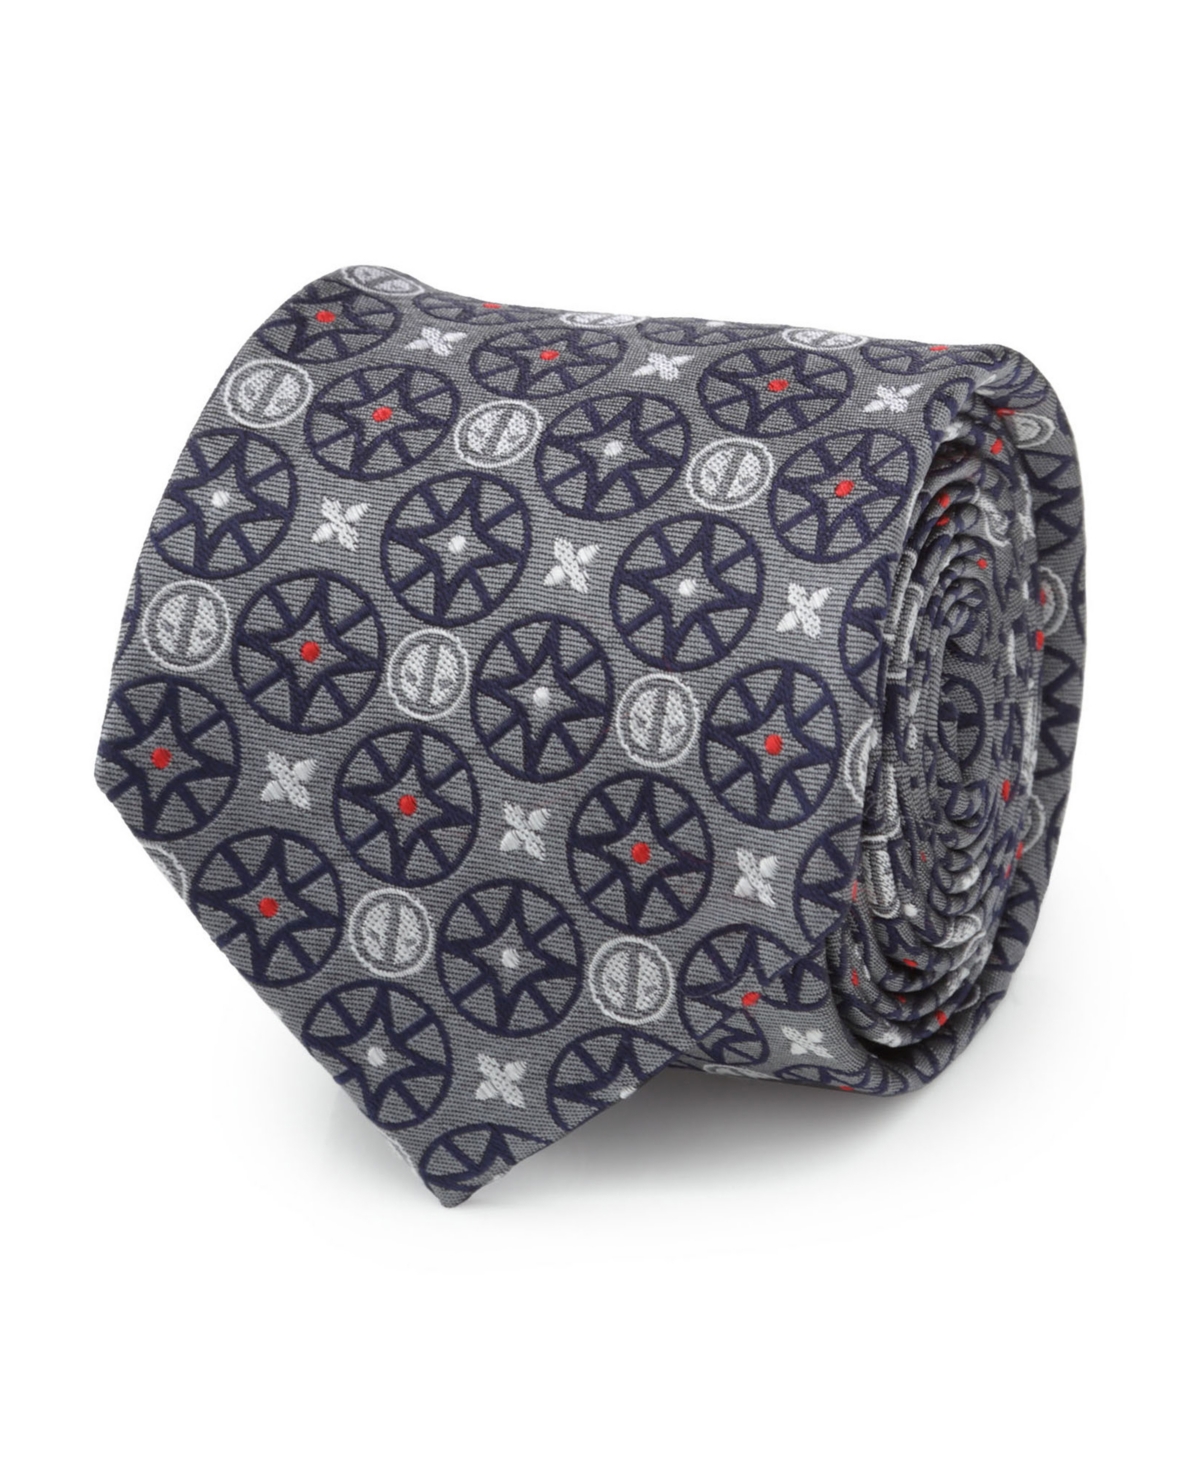 Men's Deadpool Tie - Gray